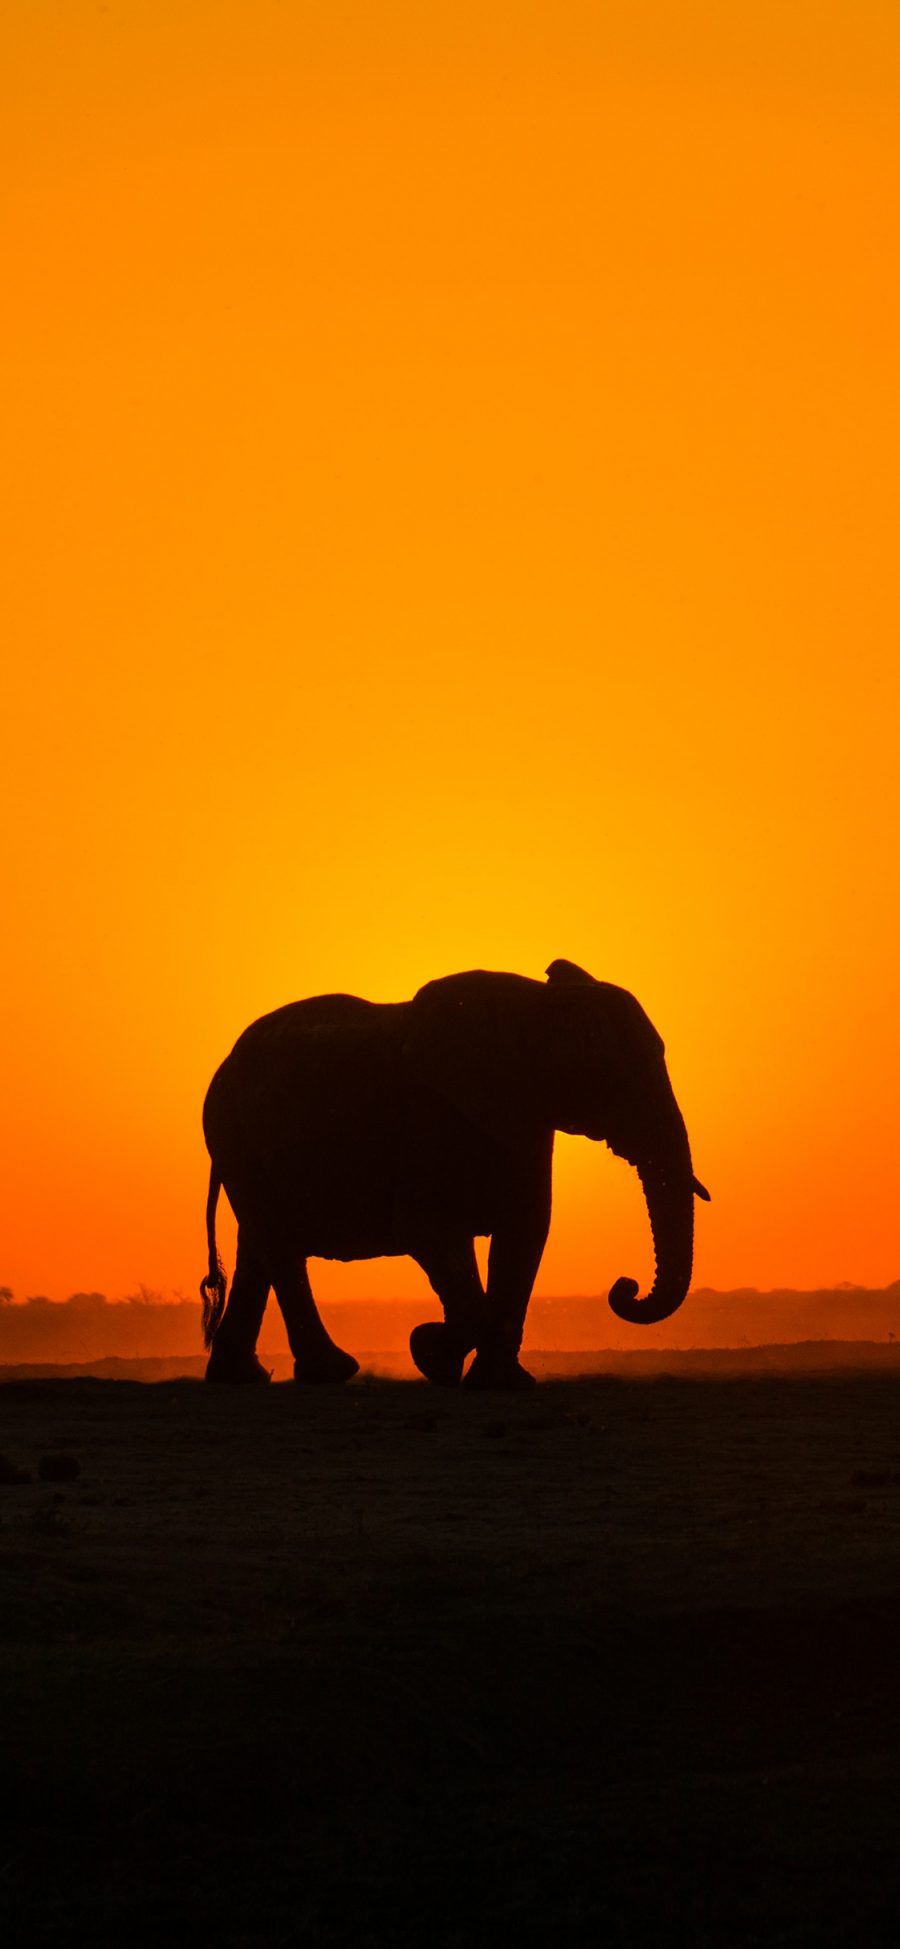 [2436×1125]郊外 夕阳 大象 群居动物 苹果手机壁纸图片